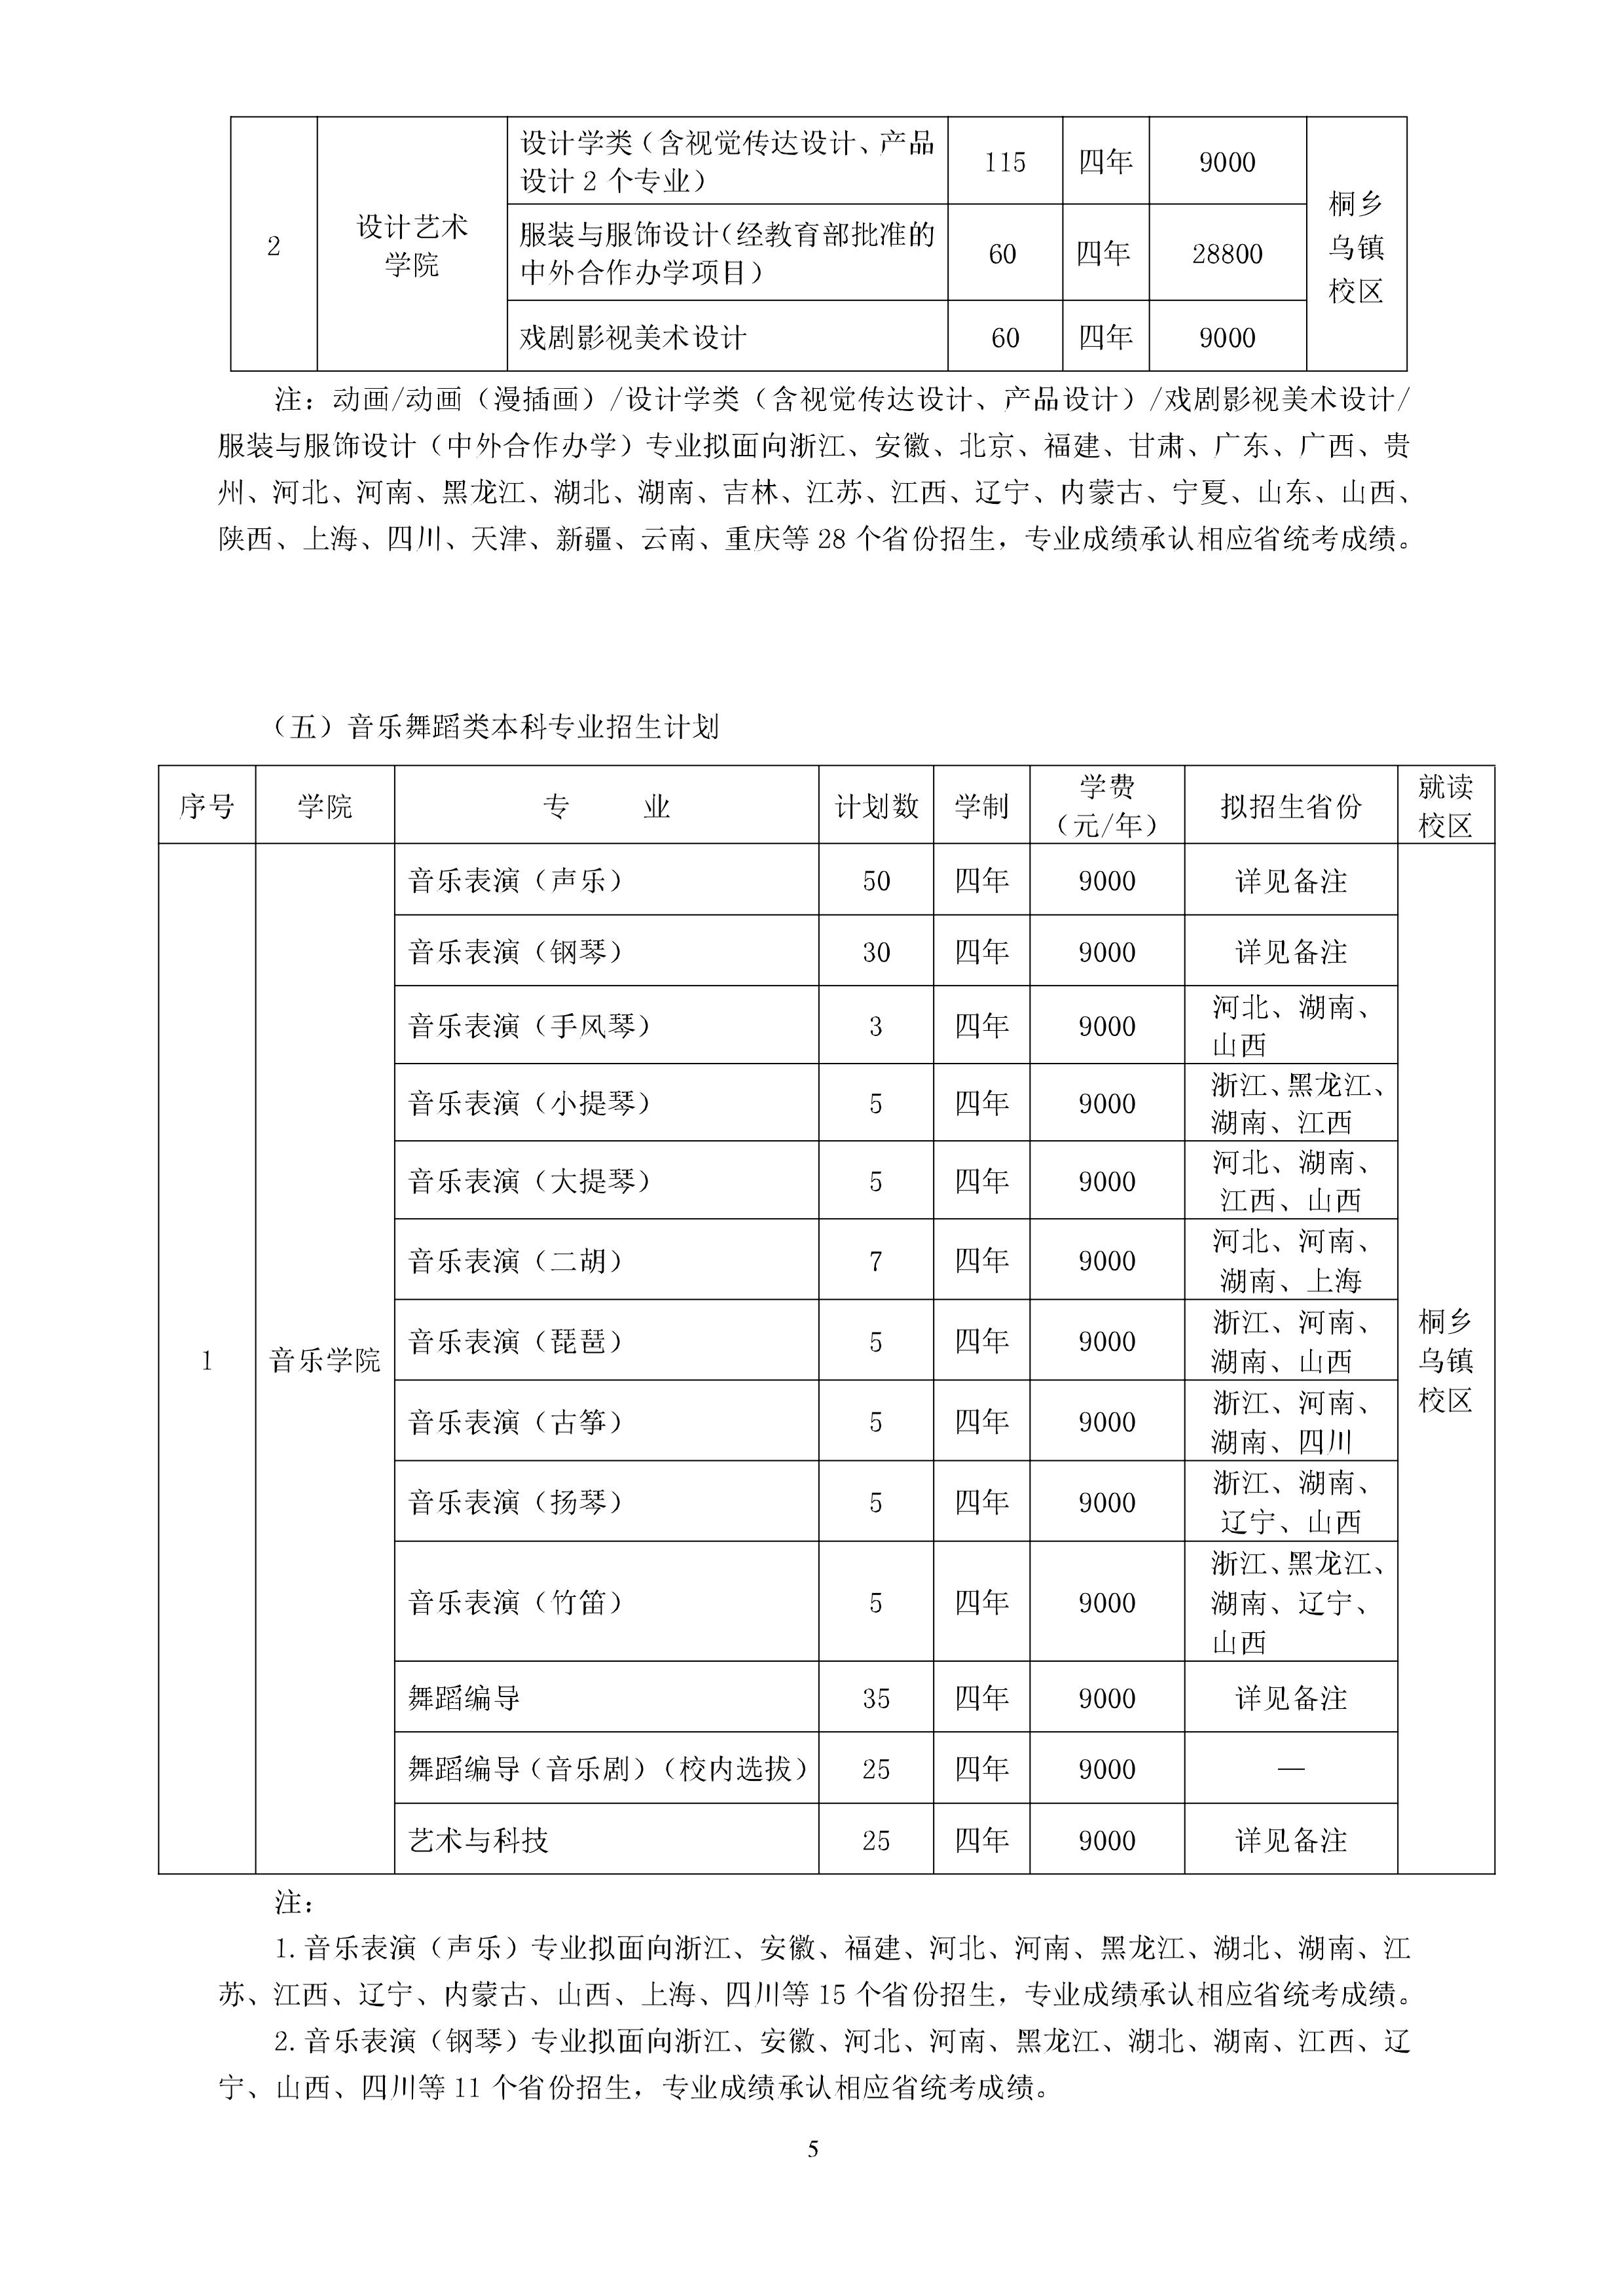 5浙江传媒学院2020年招生简章-浙江传媒学院招生网.jpg